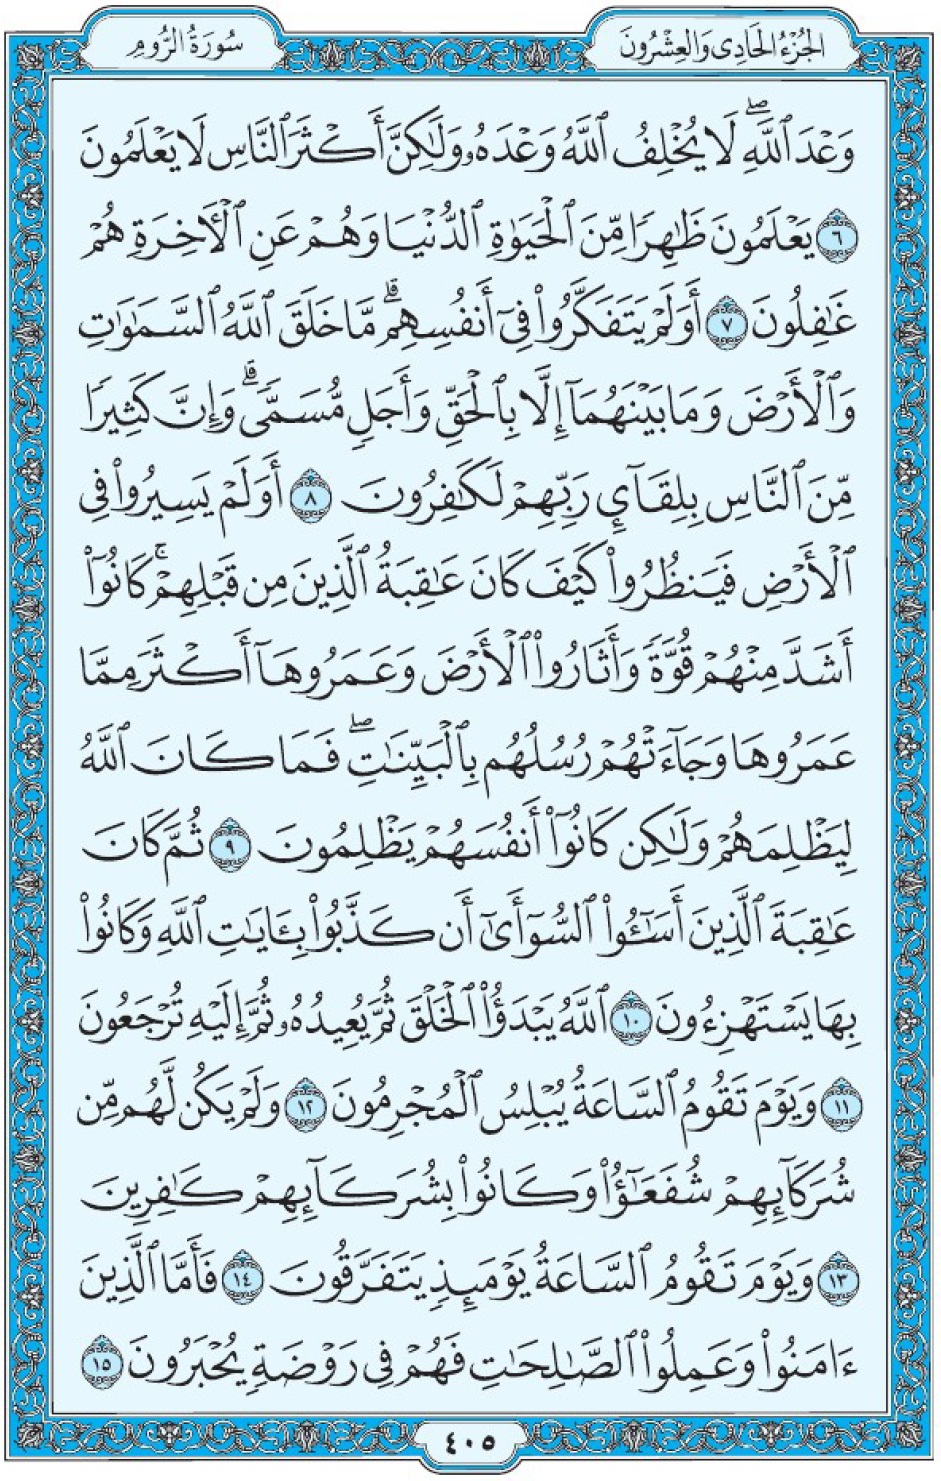 Коран Мединский мусхаф страница 405, Ар-Рум, аят 6-15